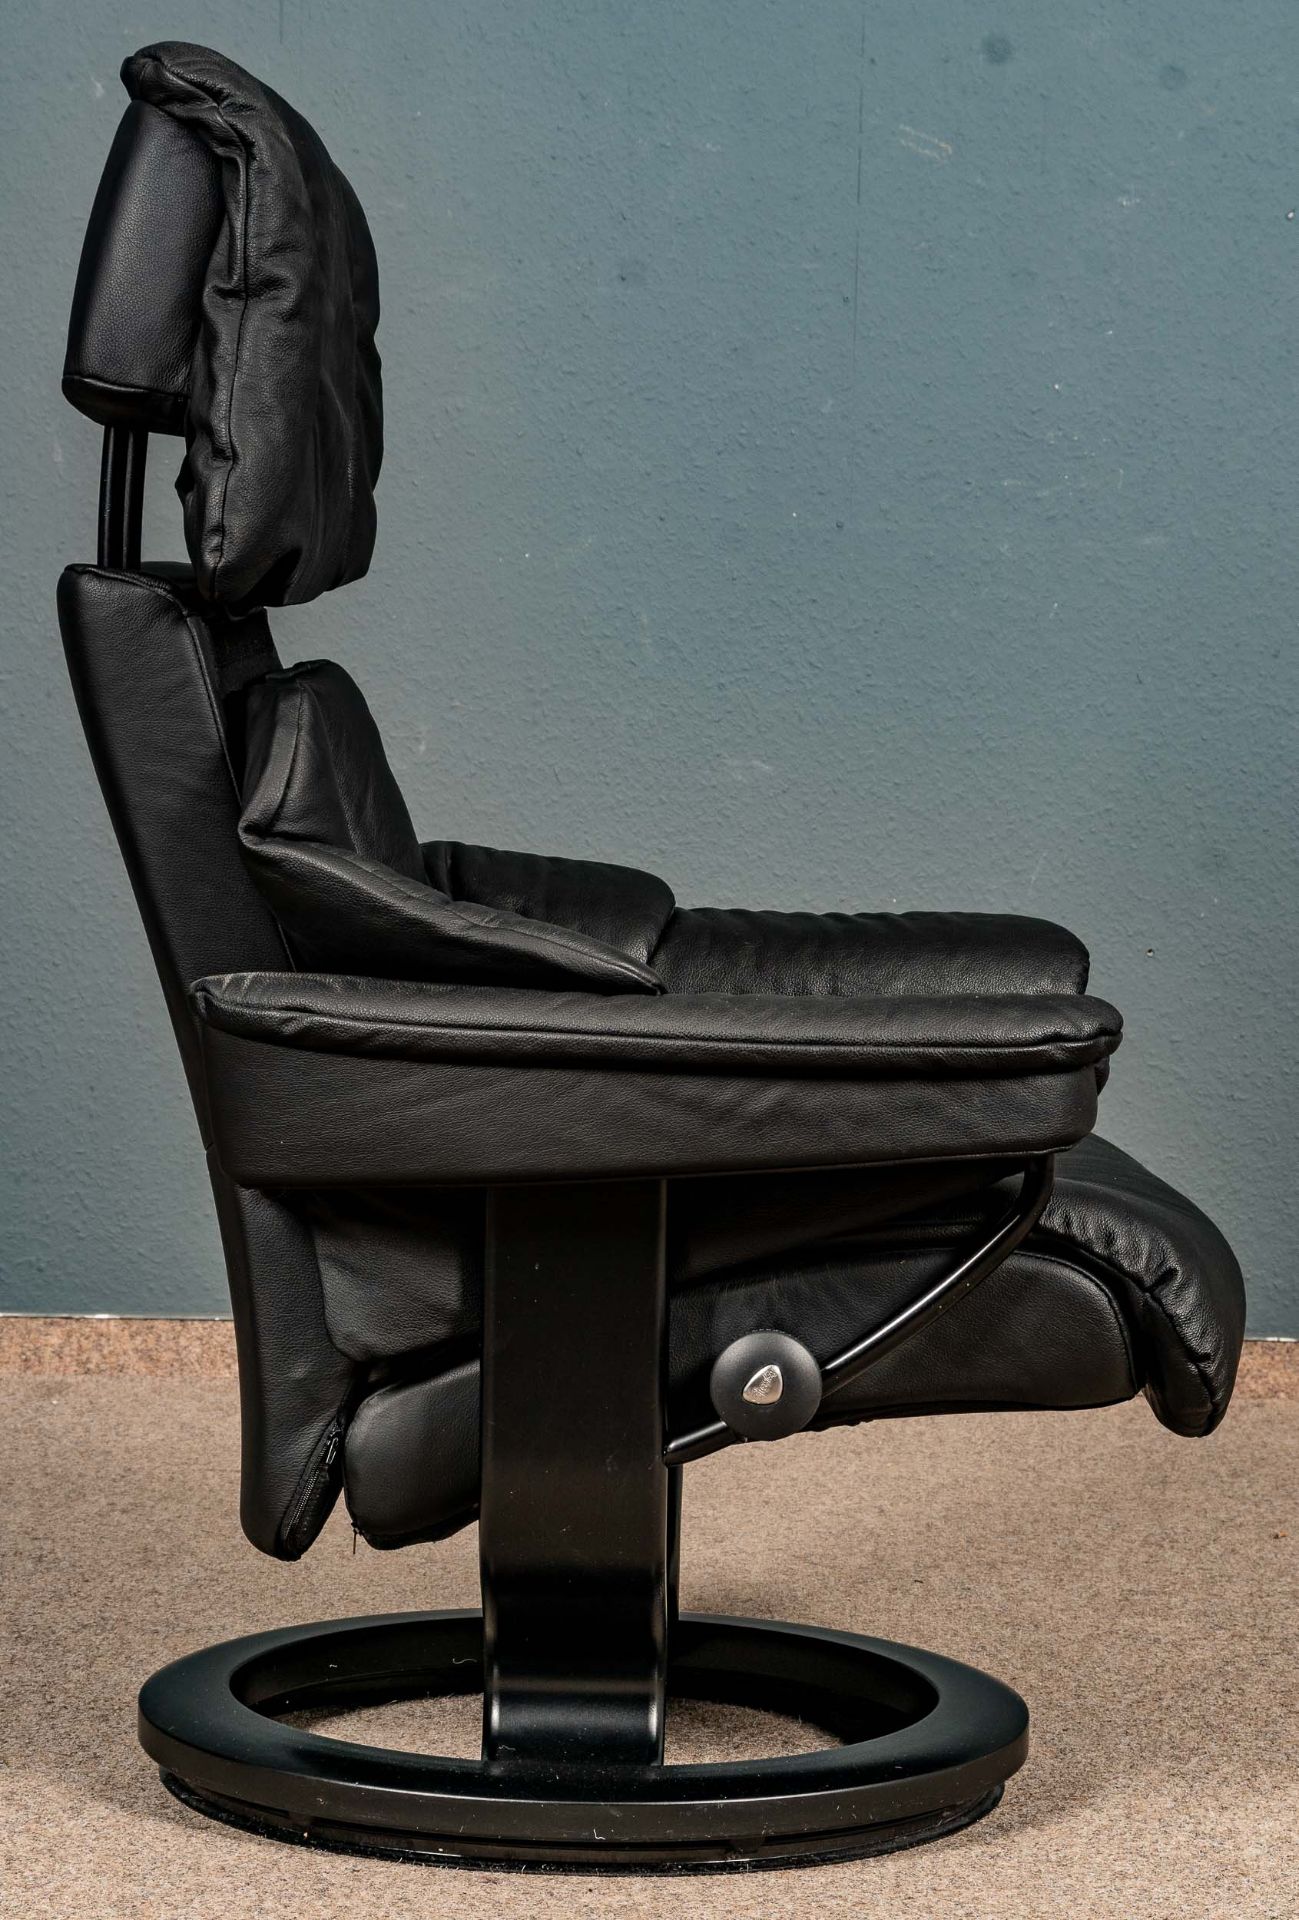 "STRESSLESS" - Sessel mit passendem Hocker, schöner gebrauchter Erhalt. Schwarzes Leder. - Bild 6 aus 8